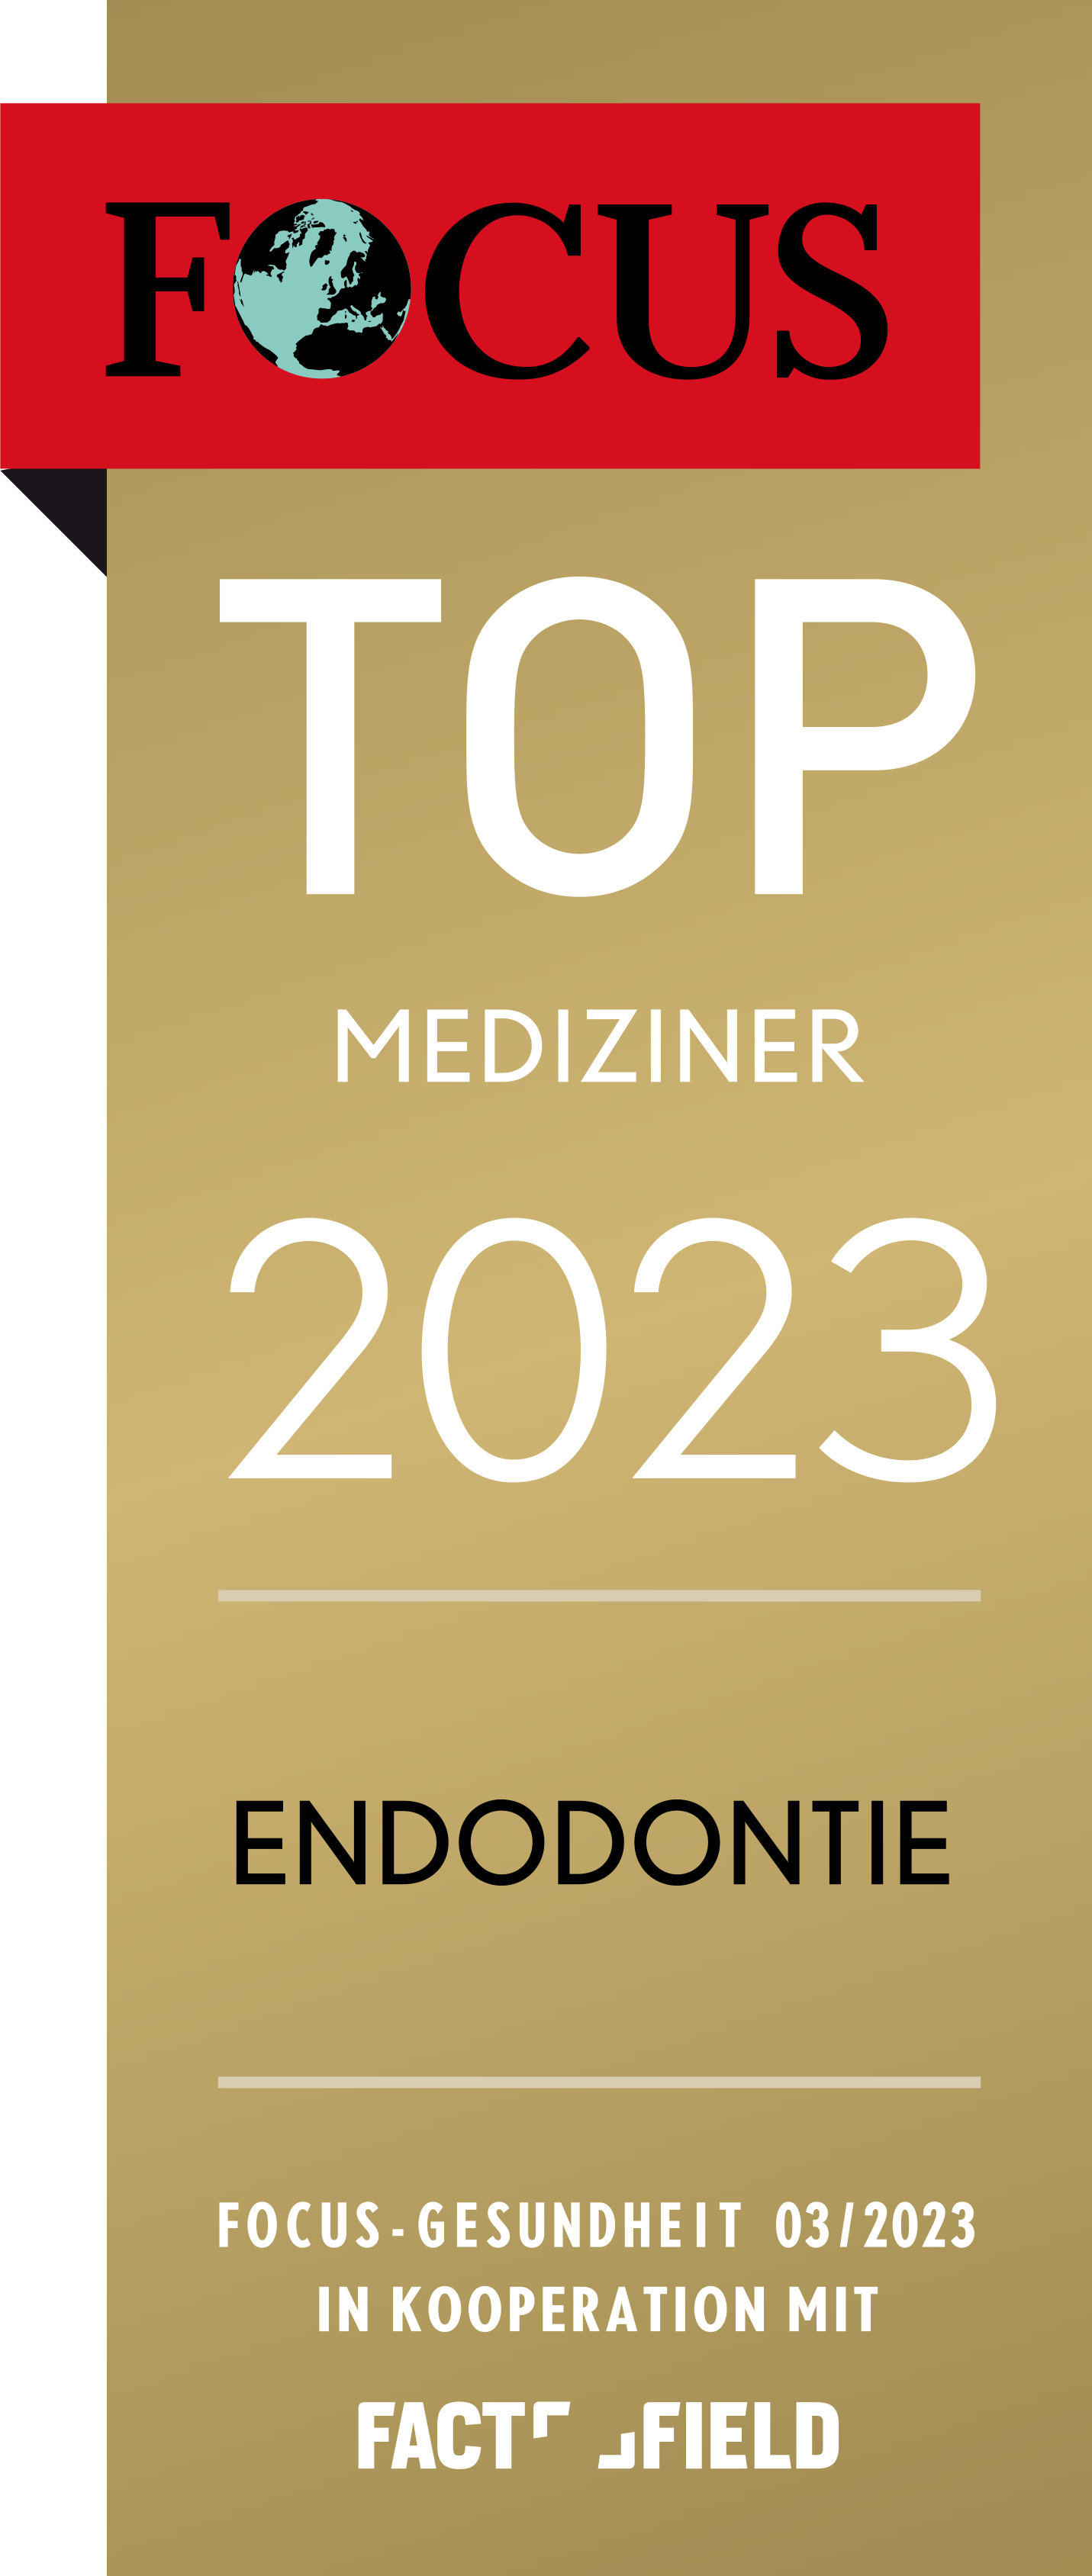 Focus Topmediziner 2023